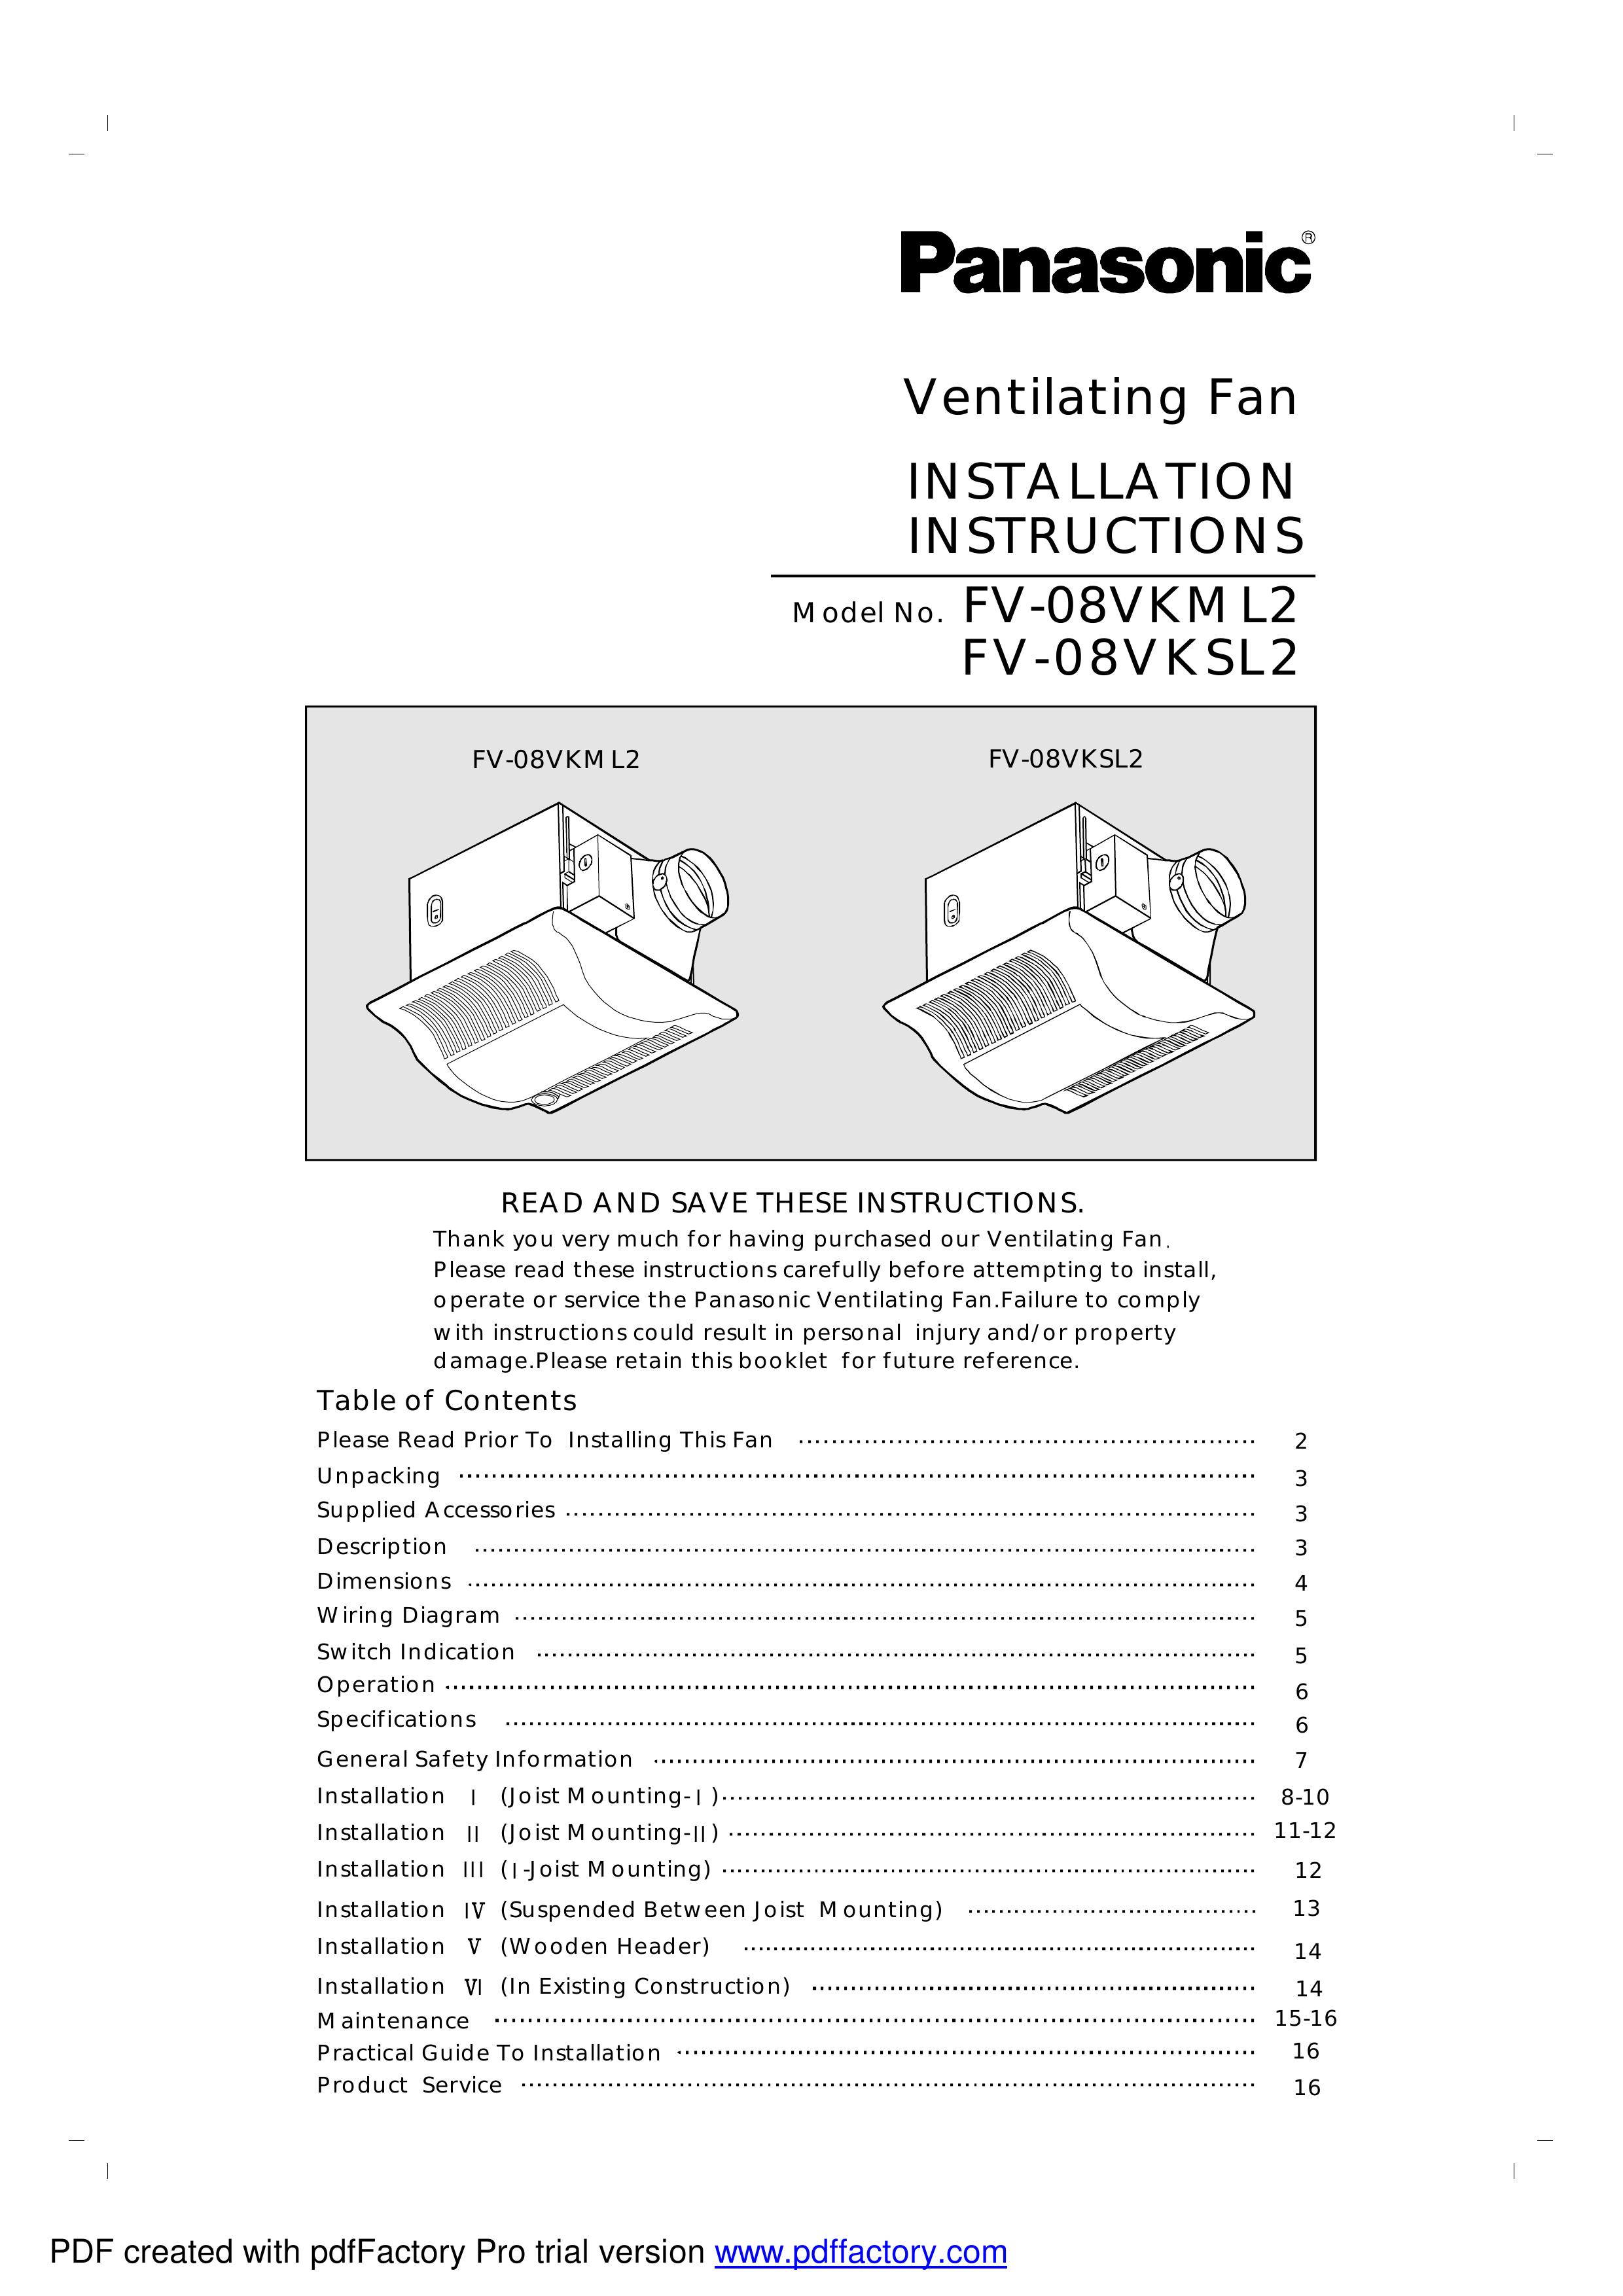 Panasonic FV-08VKSL2 Ventilation Hood User Manual